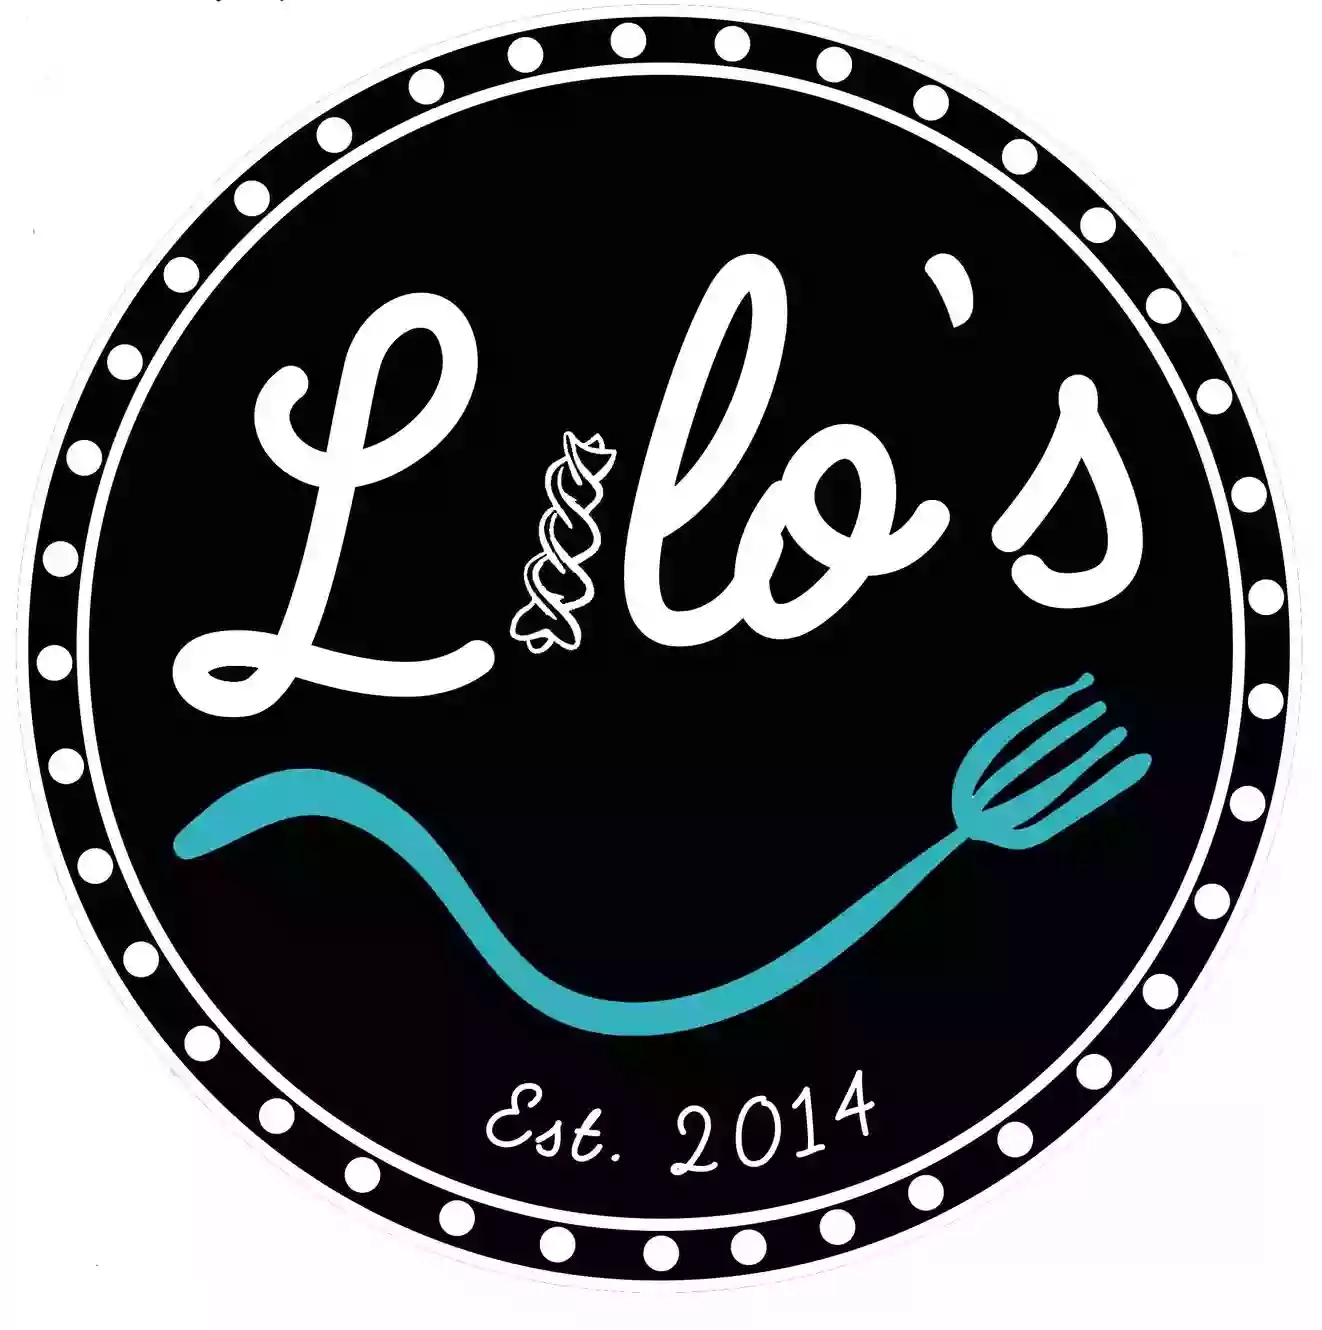 Lilo's Pasta - Pencoed